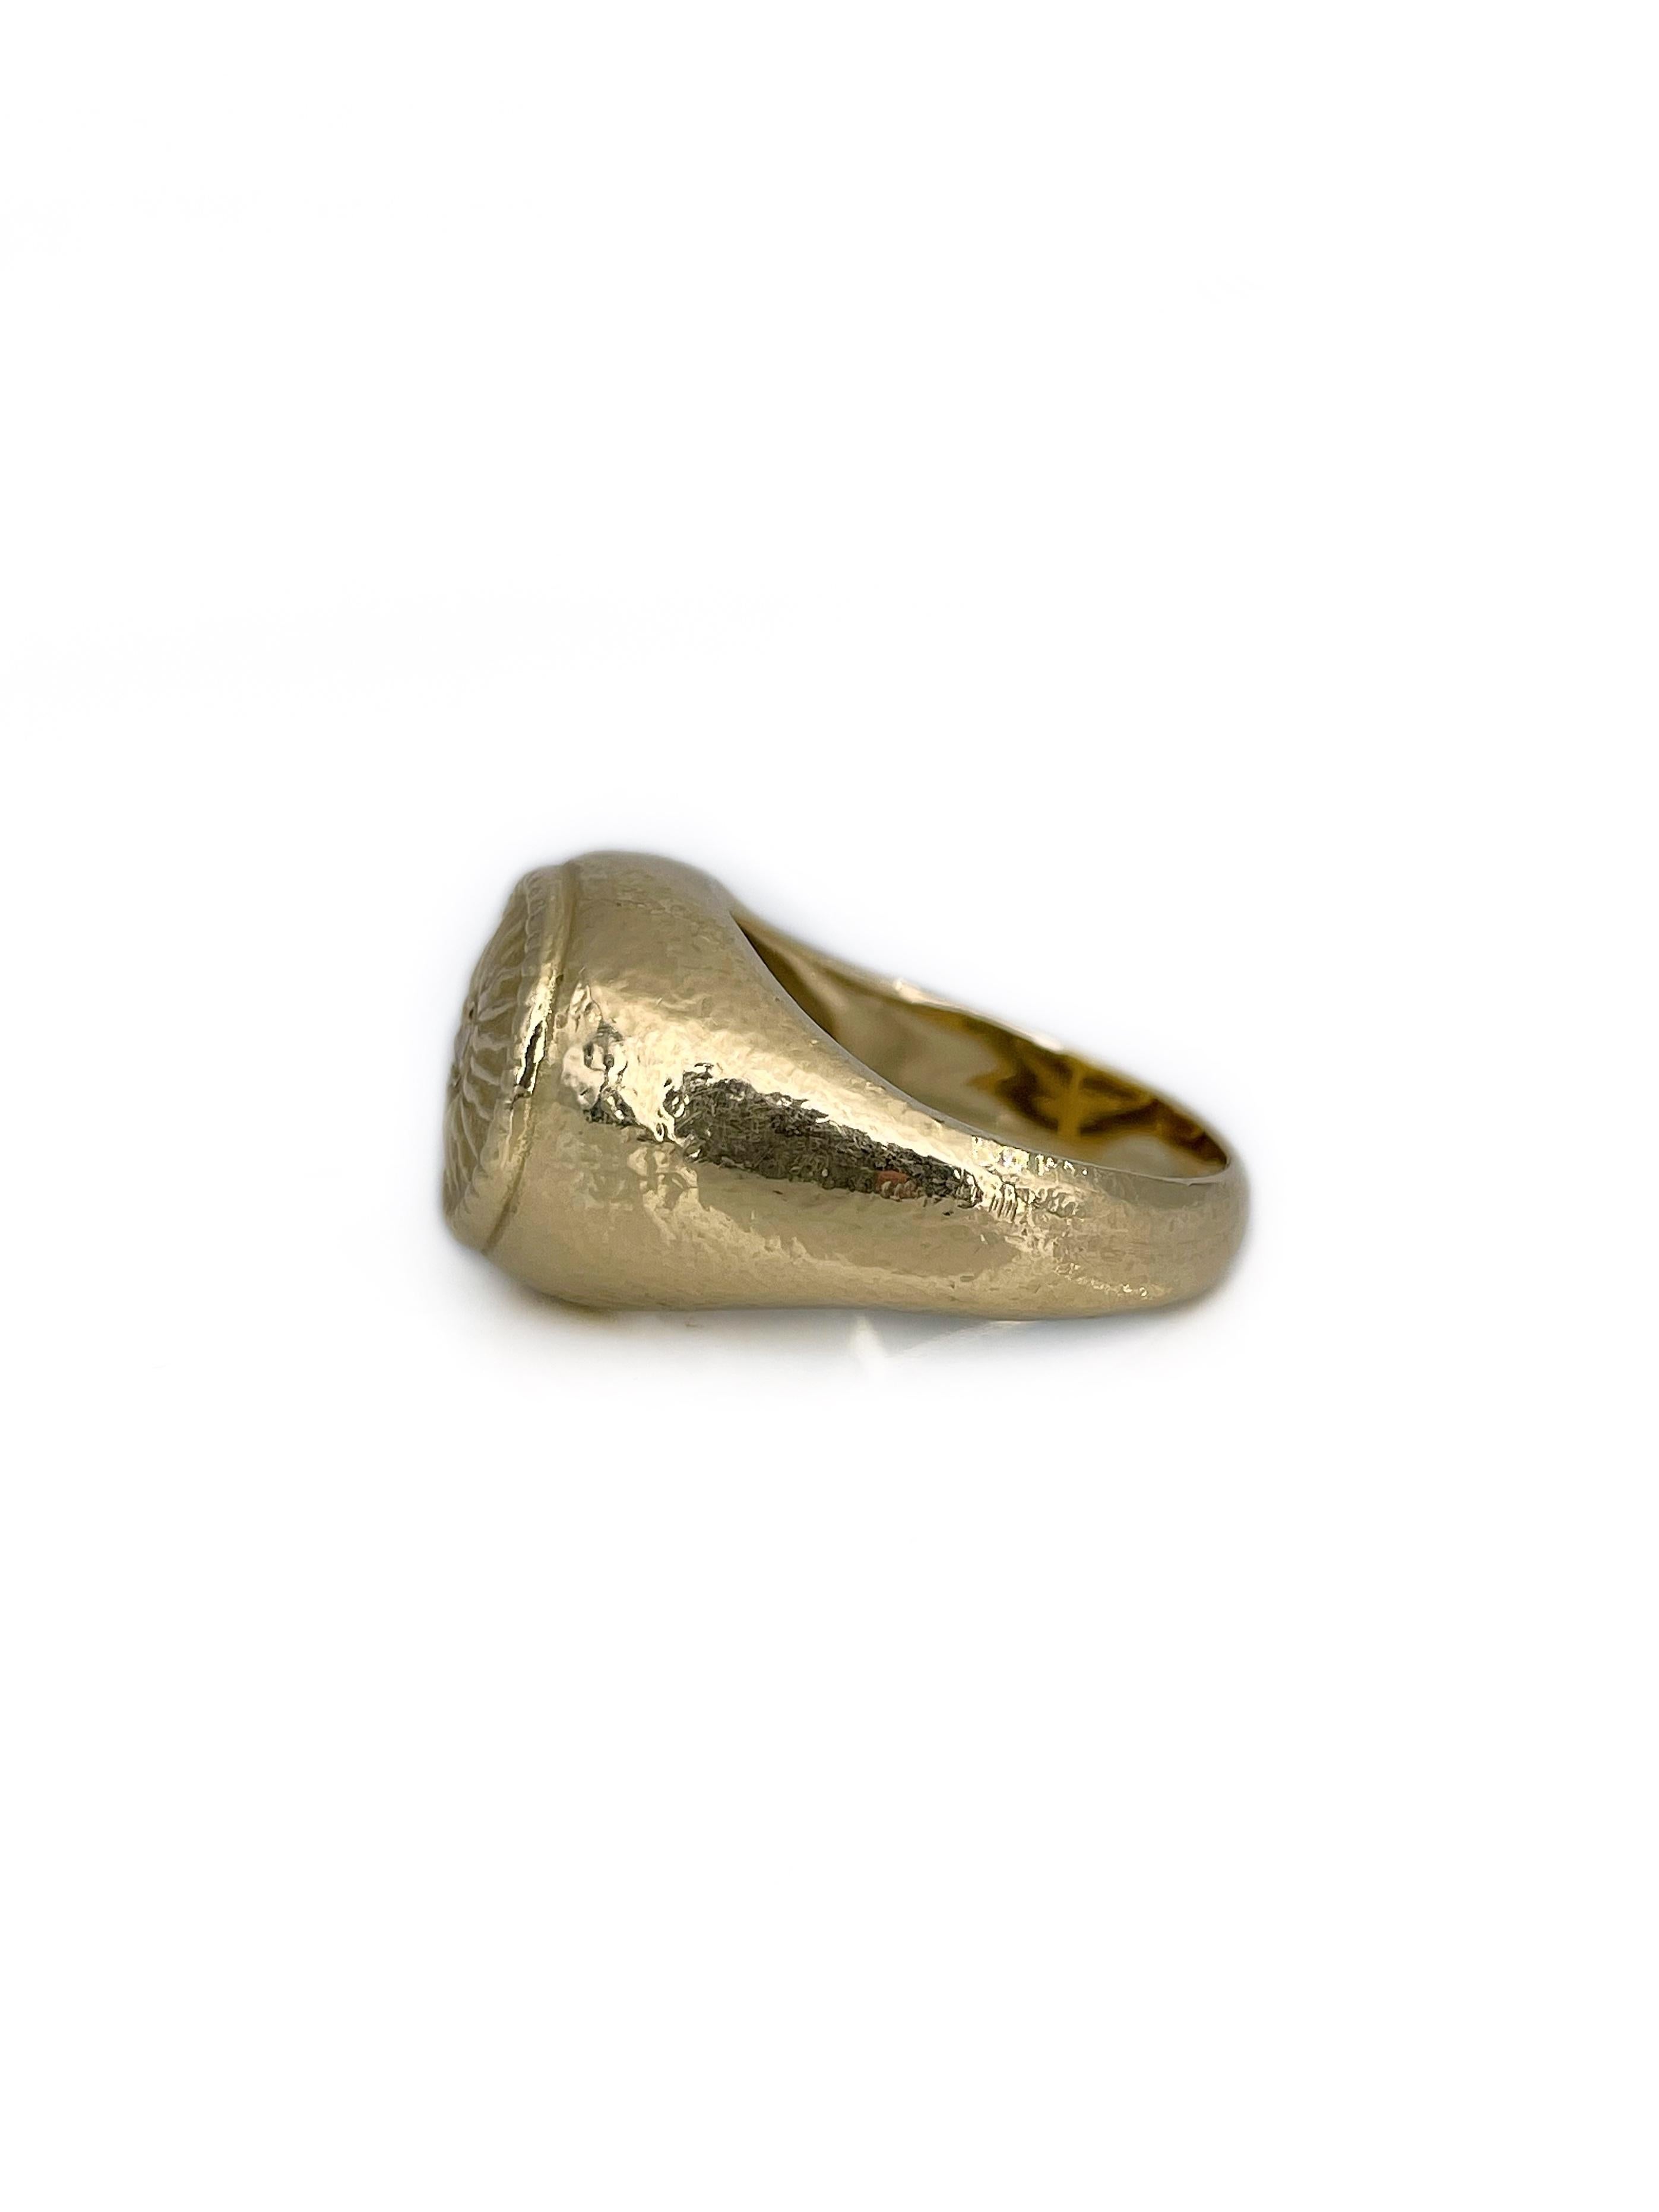 Modern Vintage 18 Karat Yellow Patterned Gold Diamond Sun Motif Signet Ring